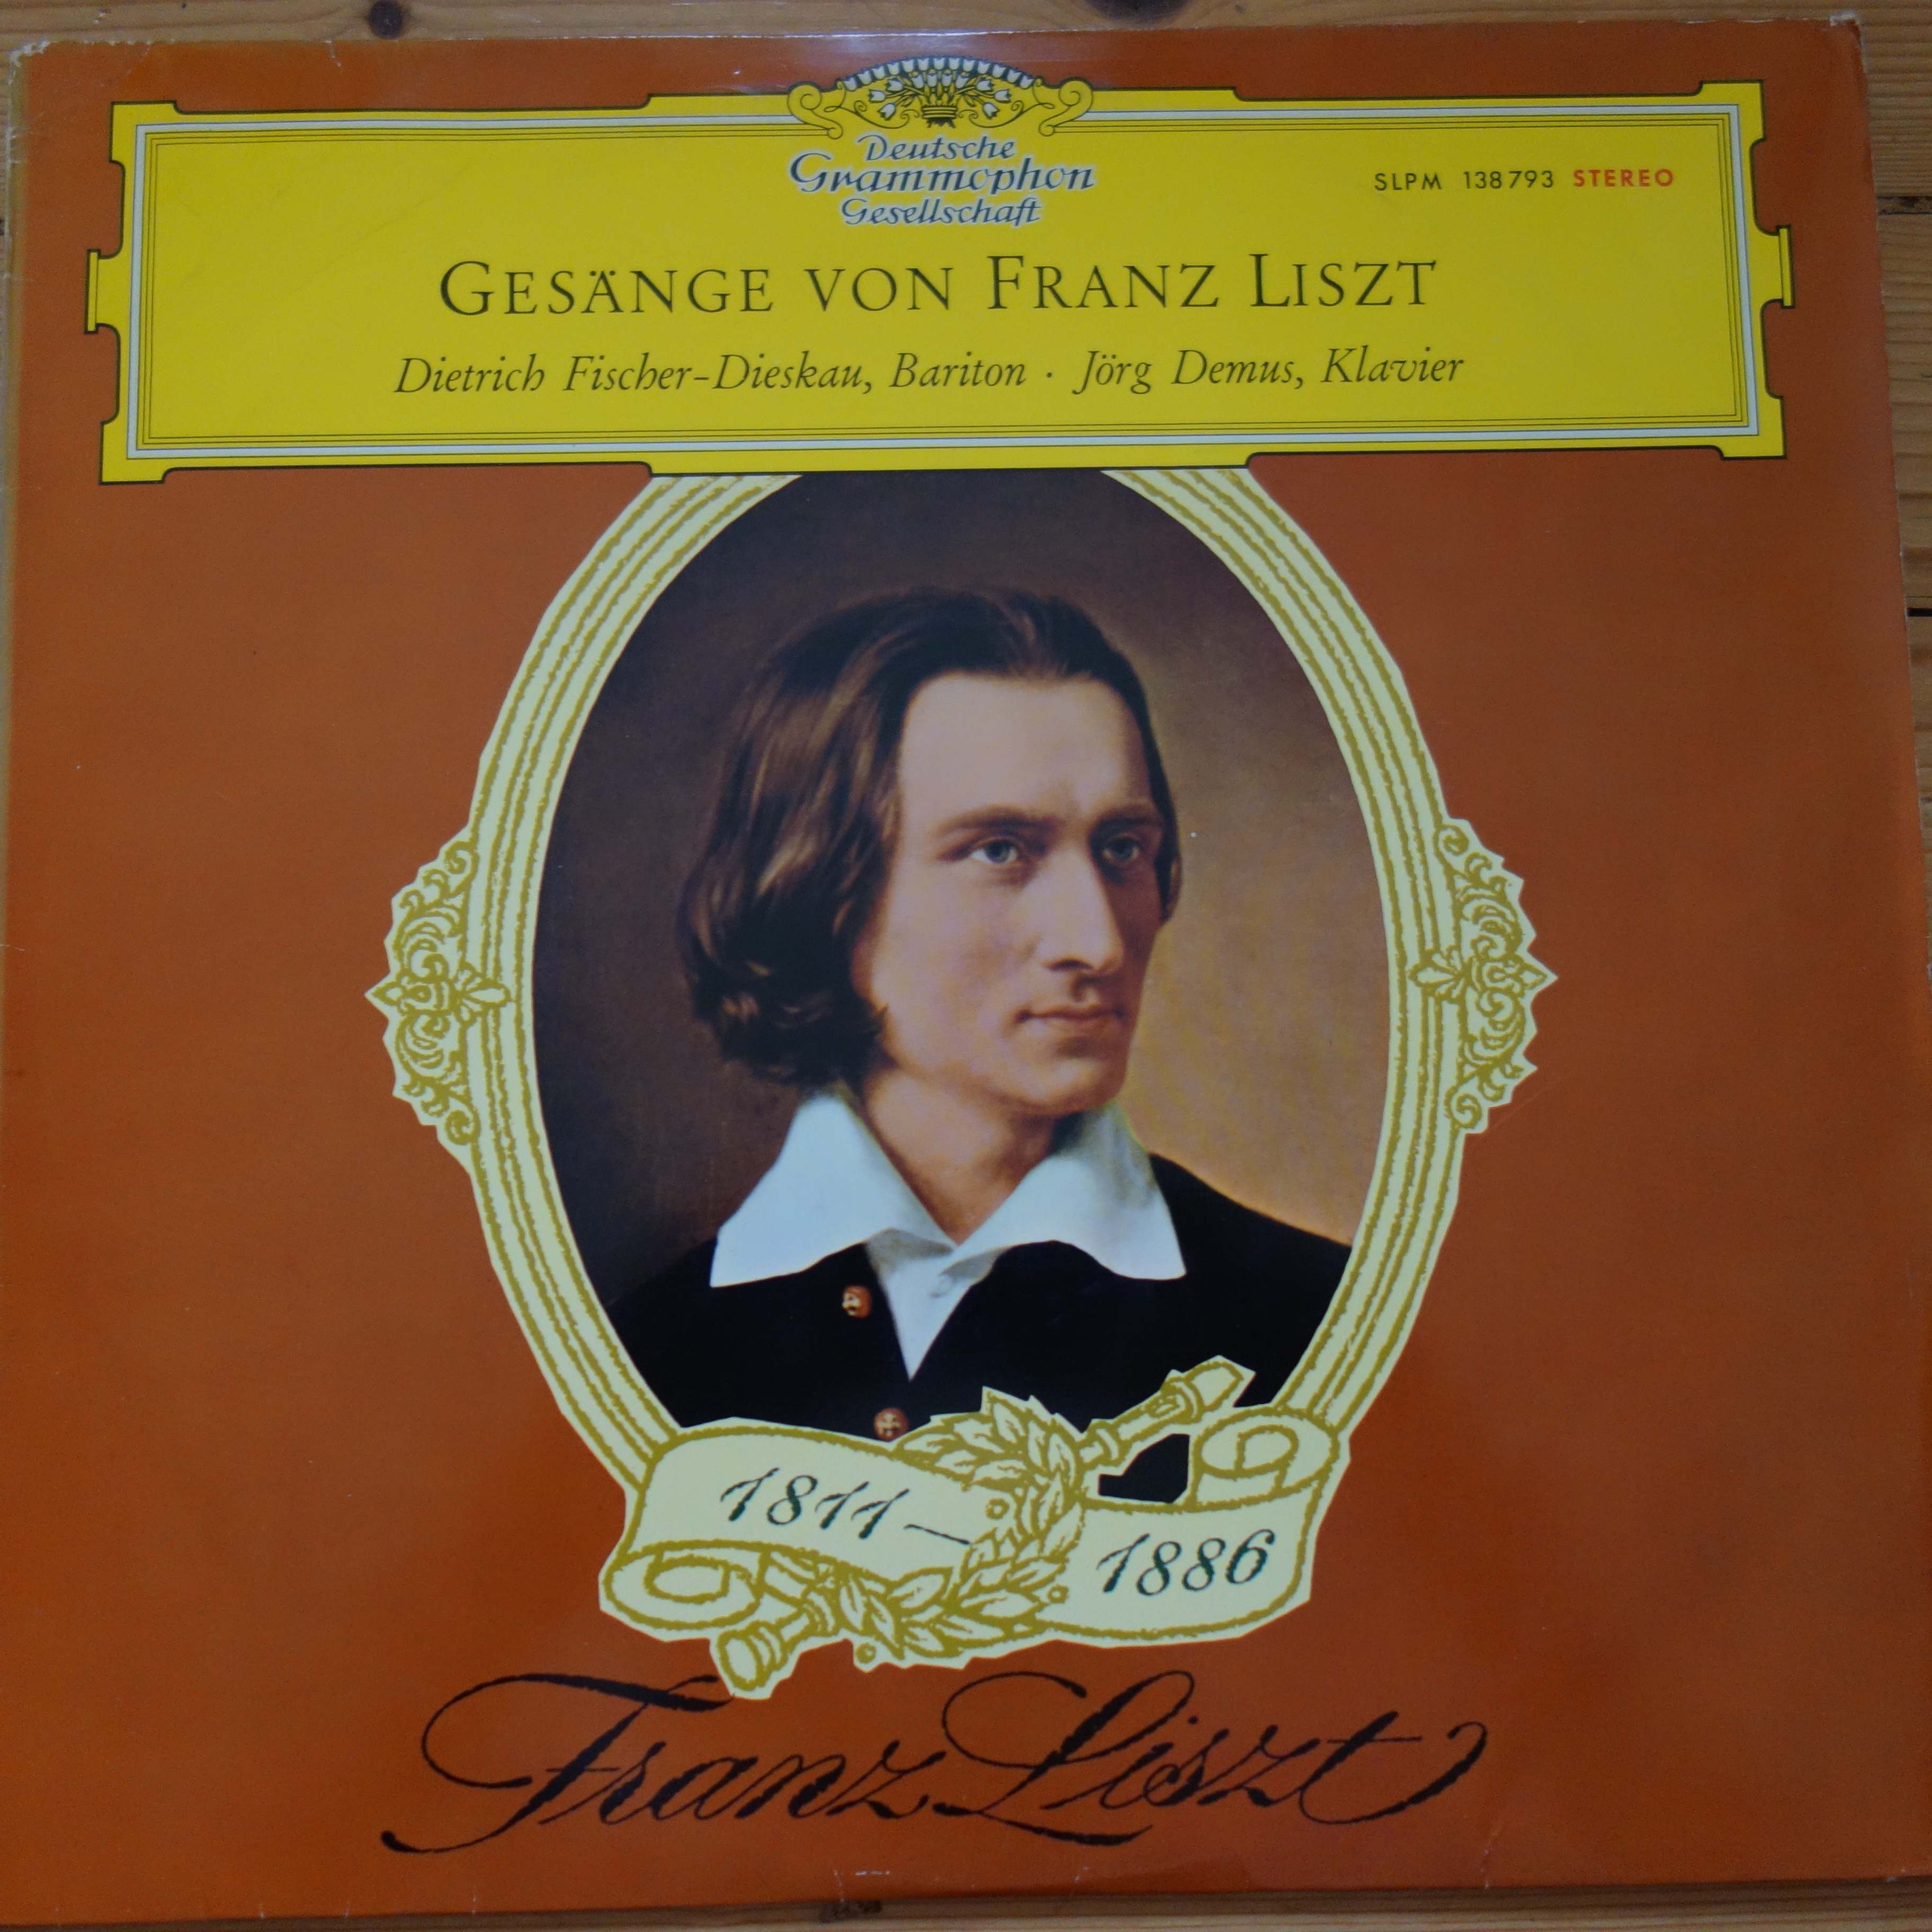 138 793 Songs of Franz Liszt / Fischer-Dieskau